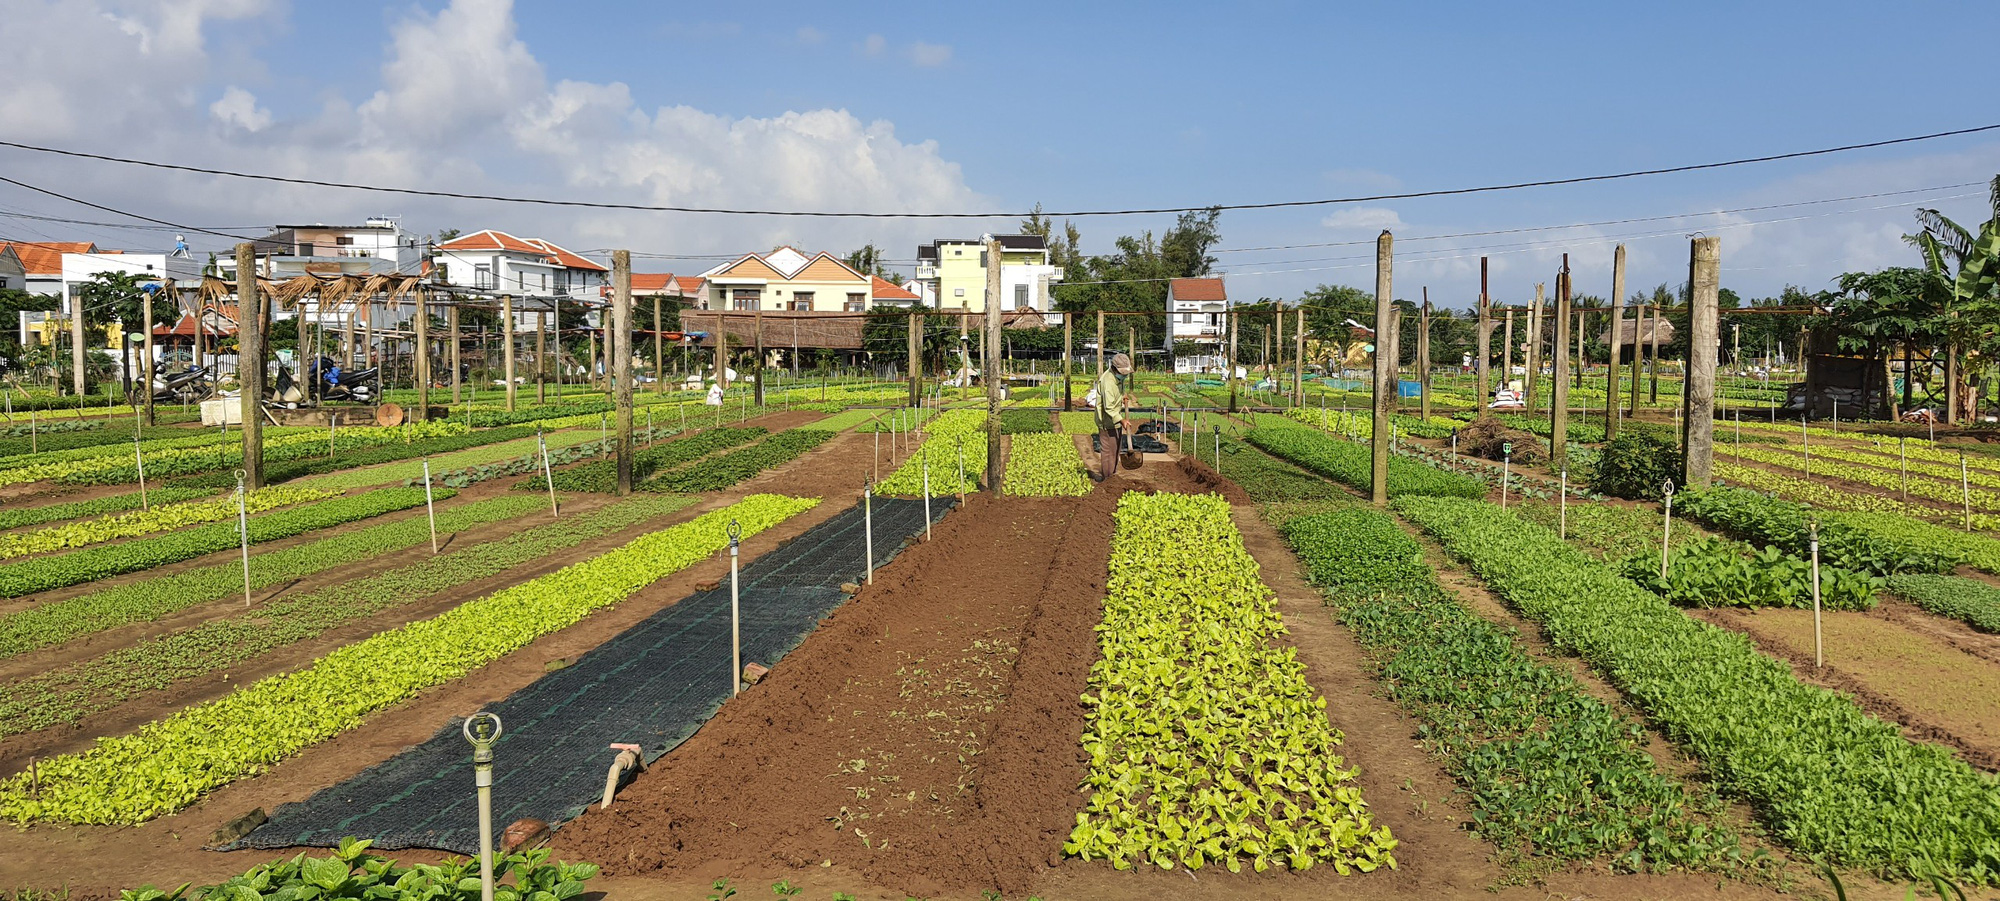 Quảng Nam: Nông dân trồng rau ở Hội An khá giả nhờ được nguồn vốn ưu đãi tiếp sức - Ảnh 3.